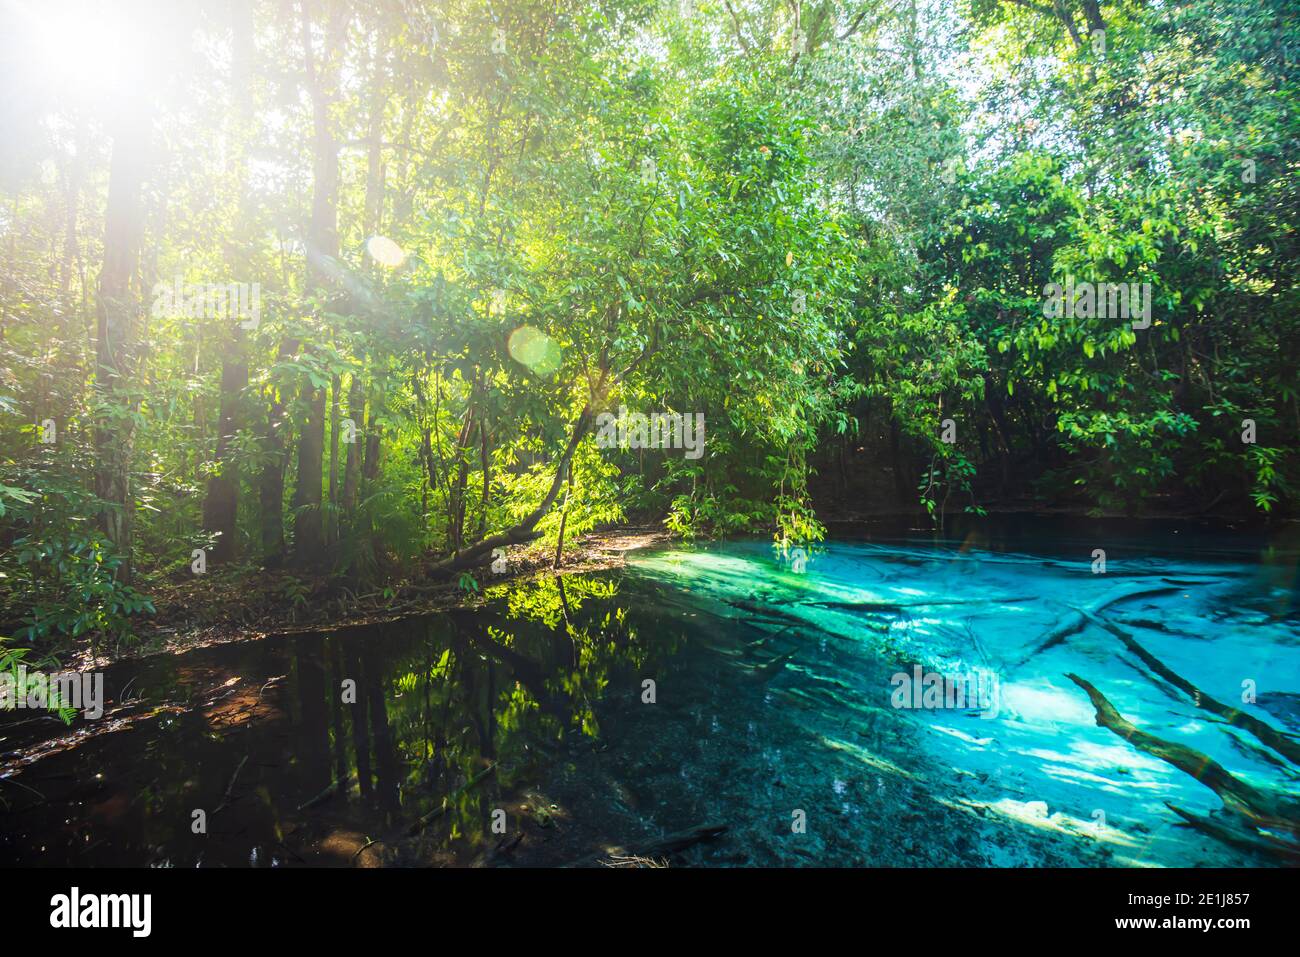 Magica piscina smeraldo nella foresta pianeggiante la mattina d'estate, l'alba splende attraverso alberi selvatici sulla superficie di acqua dolce turchese. Krabi, Tailandia. Foto Stock